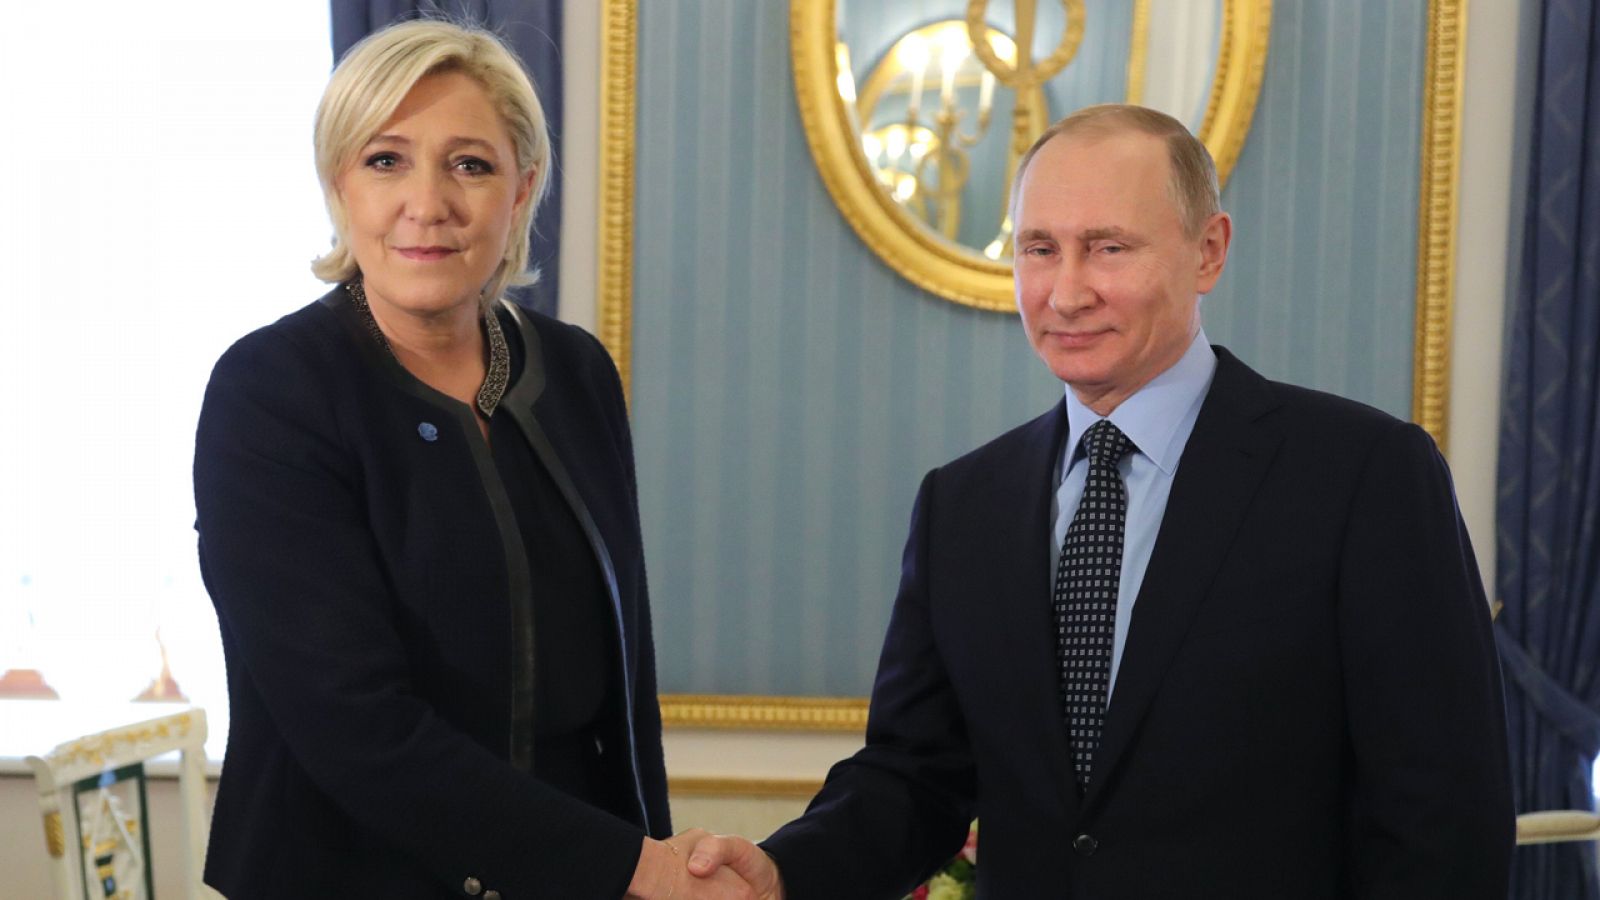 El presidente Vladimir Putin recibe a la candidata a las elecciones presidenciales francesas, Marine Le Pen.